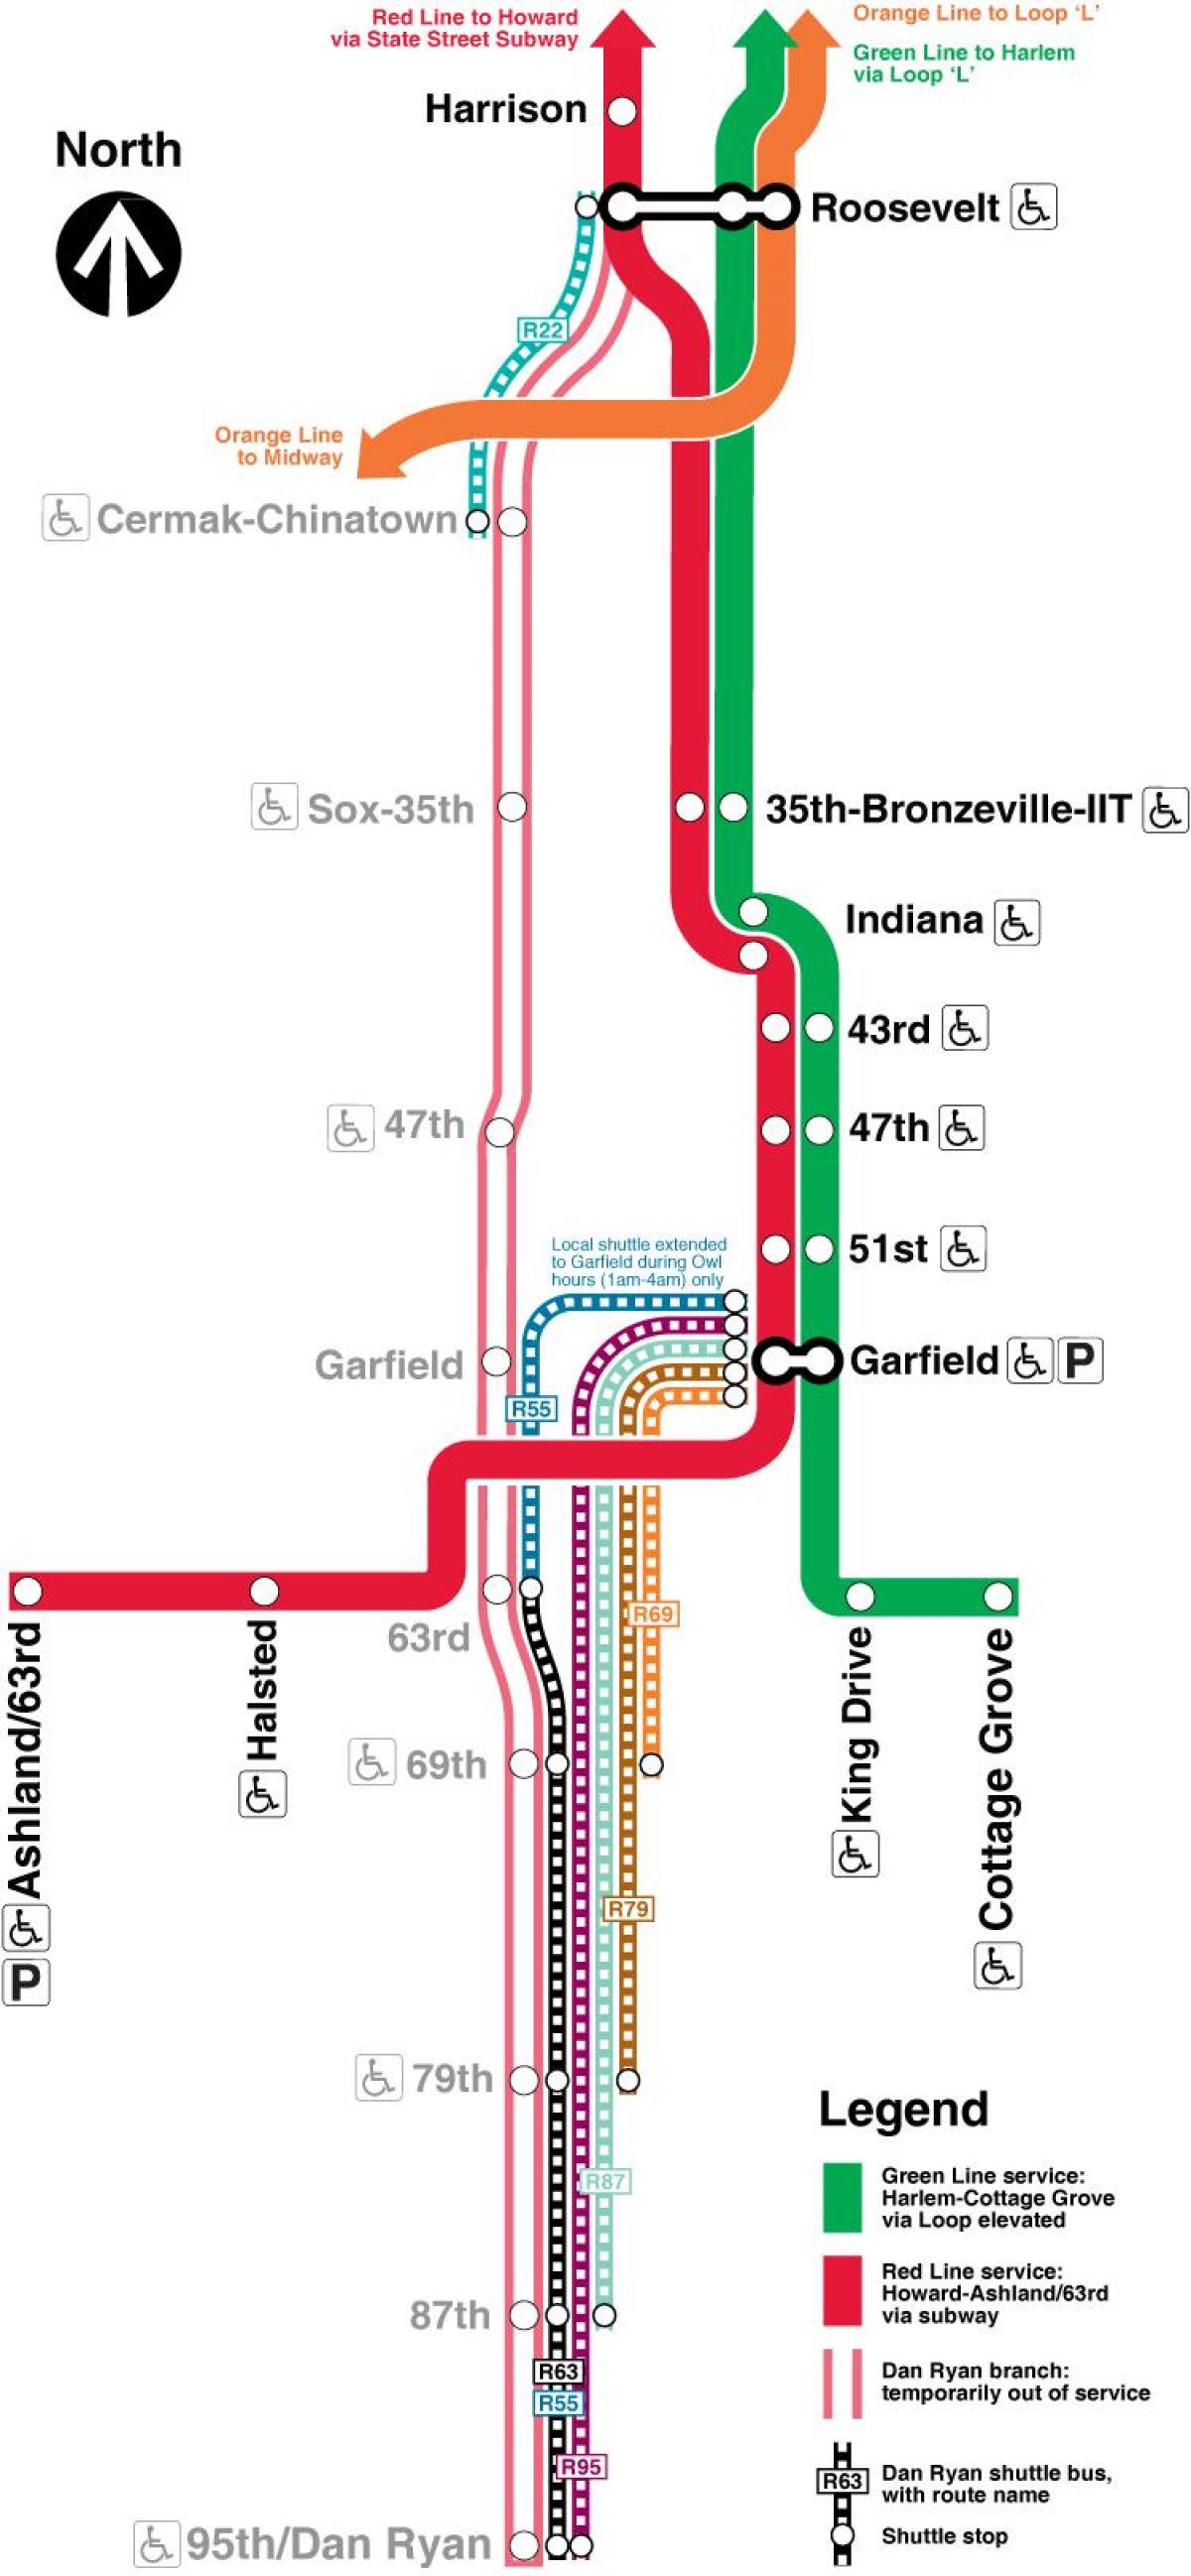 Chicago mappa della metropolitana linea rossa